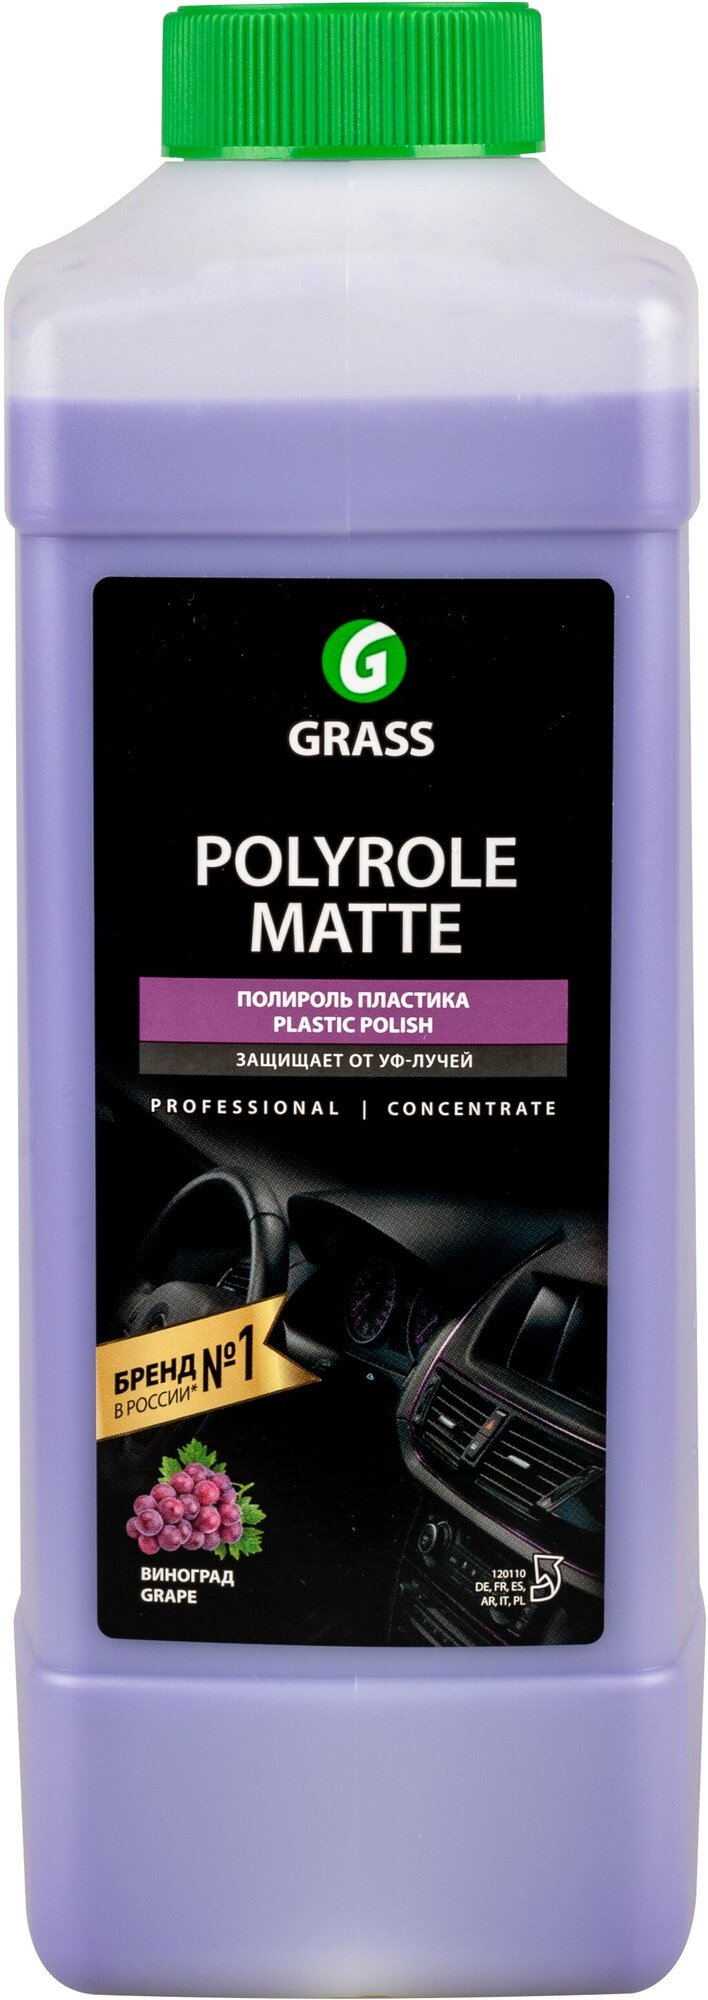 Полироль панели матовый GRASS Polyrole Matte дополнительное очищение Виноград 1л 120110